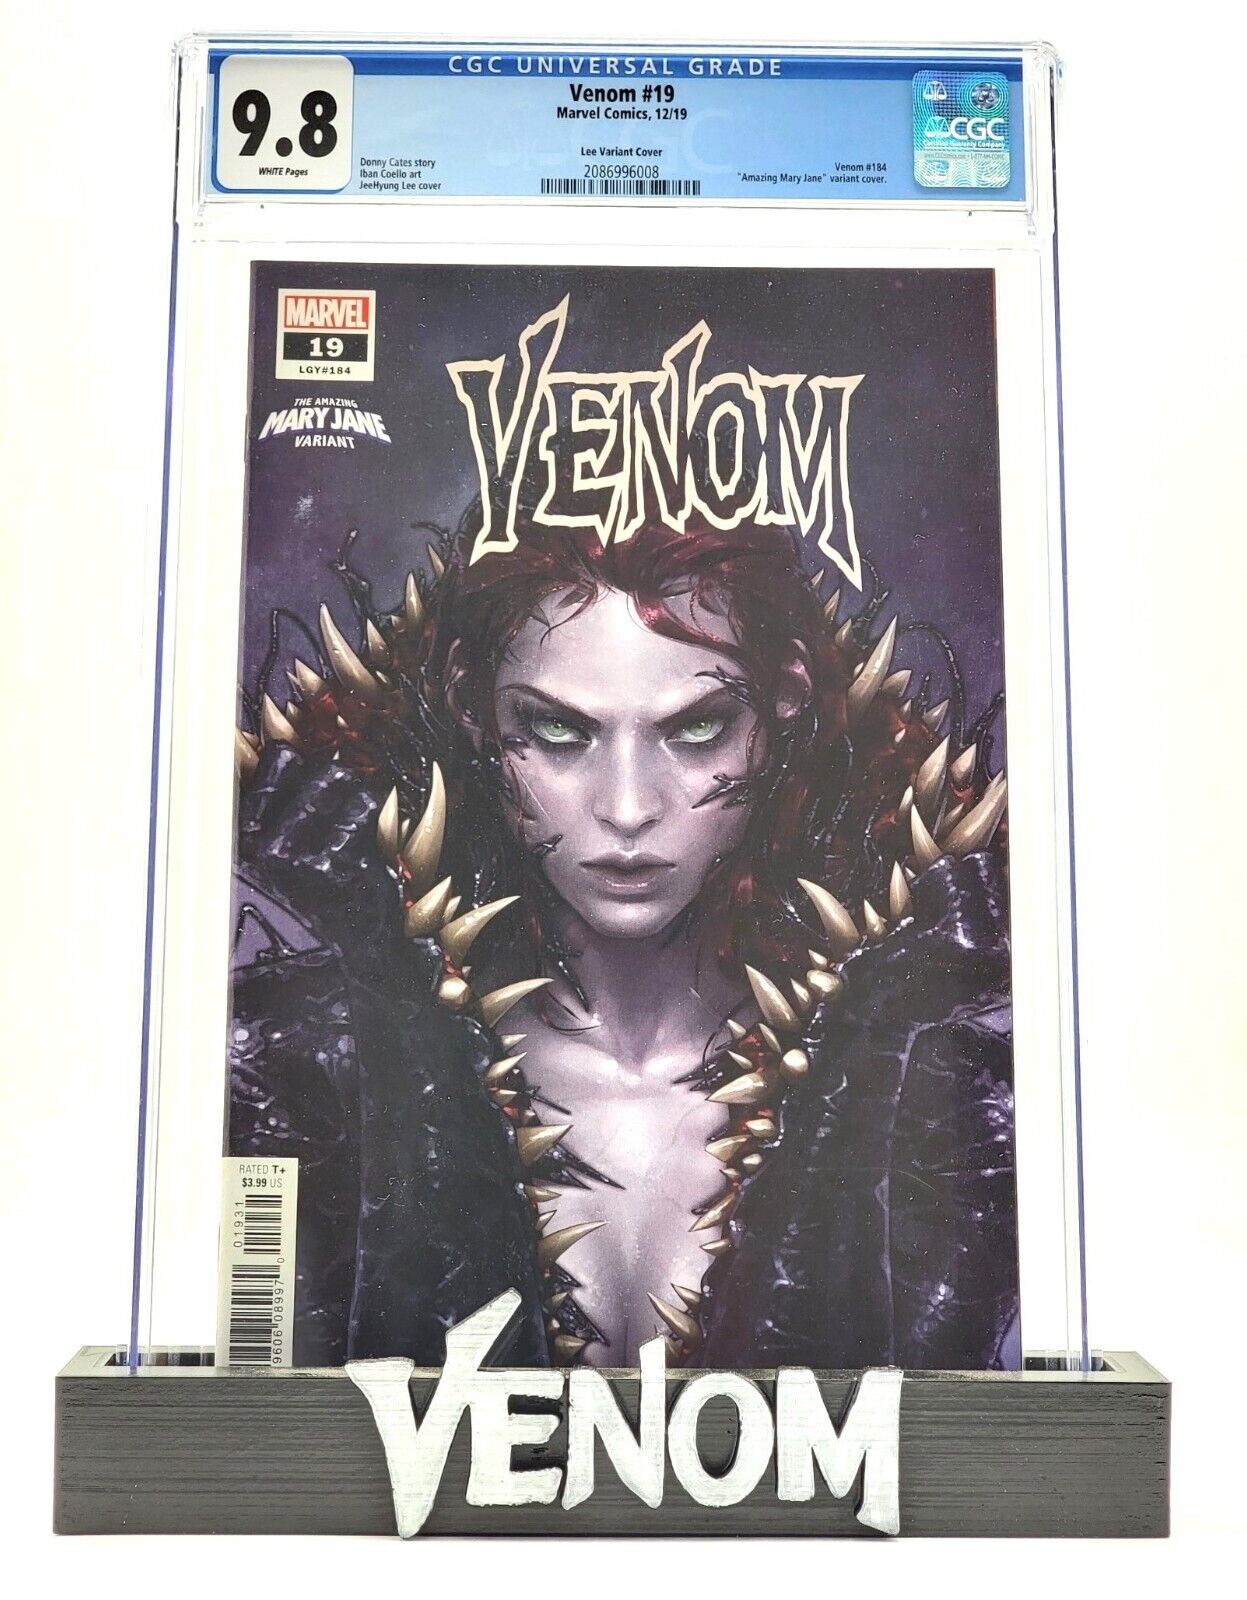 Venom #19 Comic Book 2019 CGC 9.8 Amazing Mary Jane Variant Marvel Comics